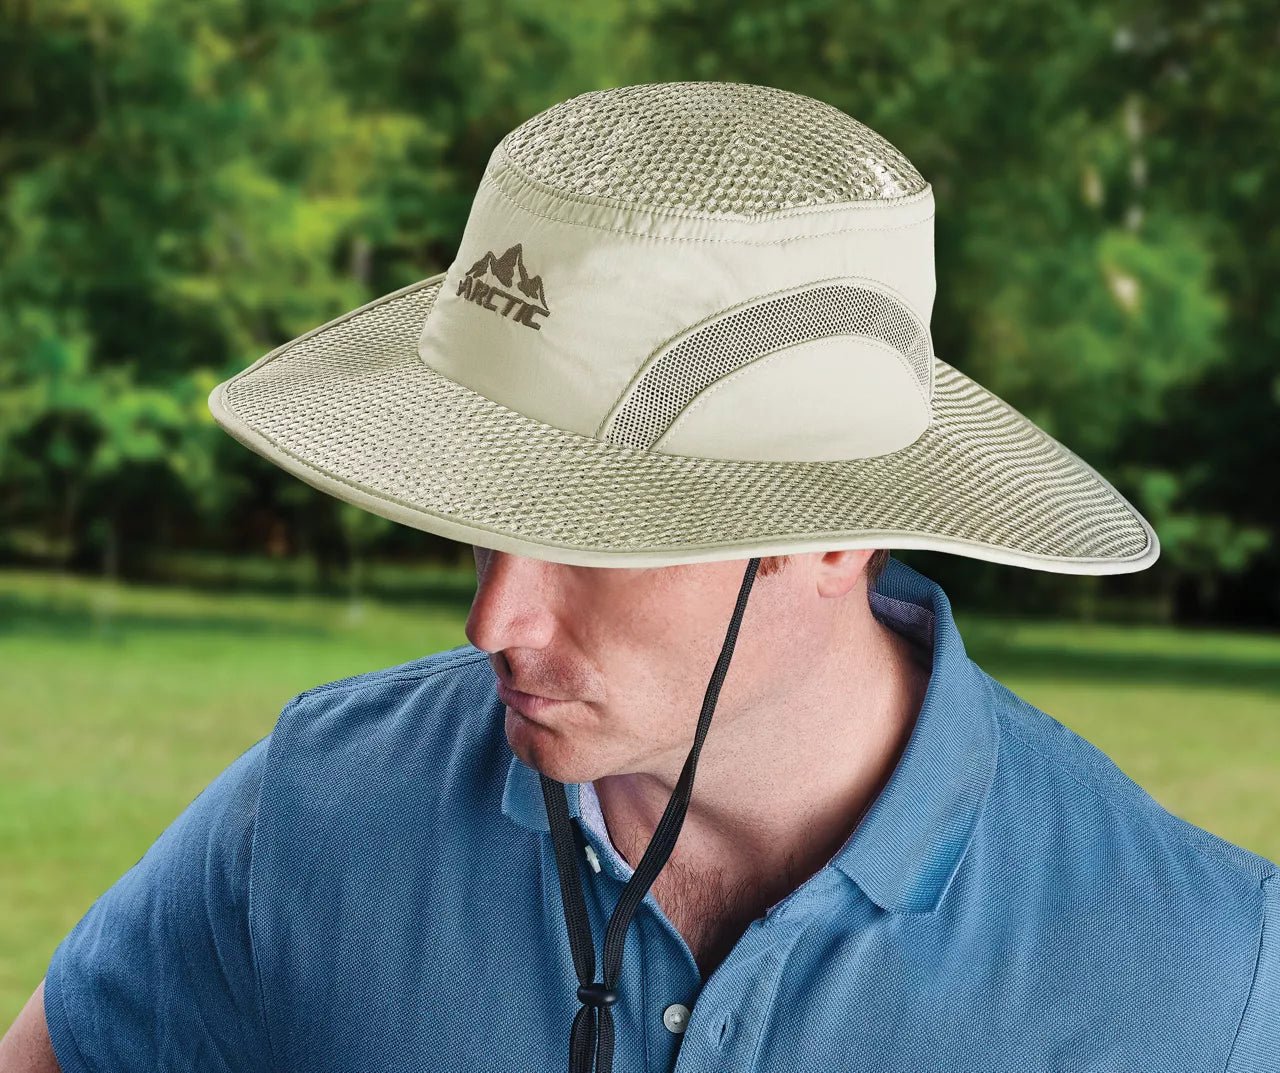 Δροσερό Καπέλο Ηλίου ARGTiG HAT - The GrBazaar of Brands